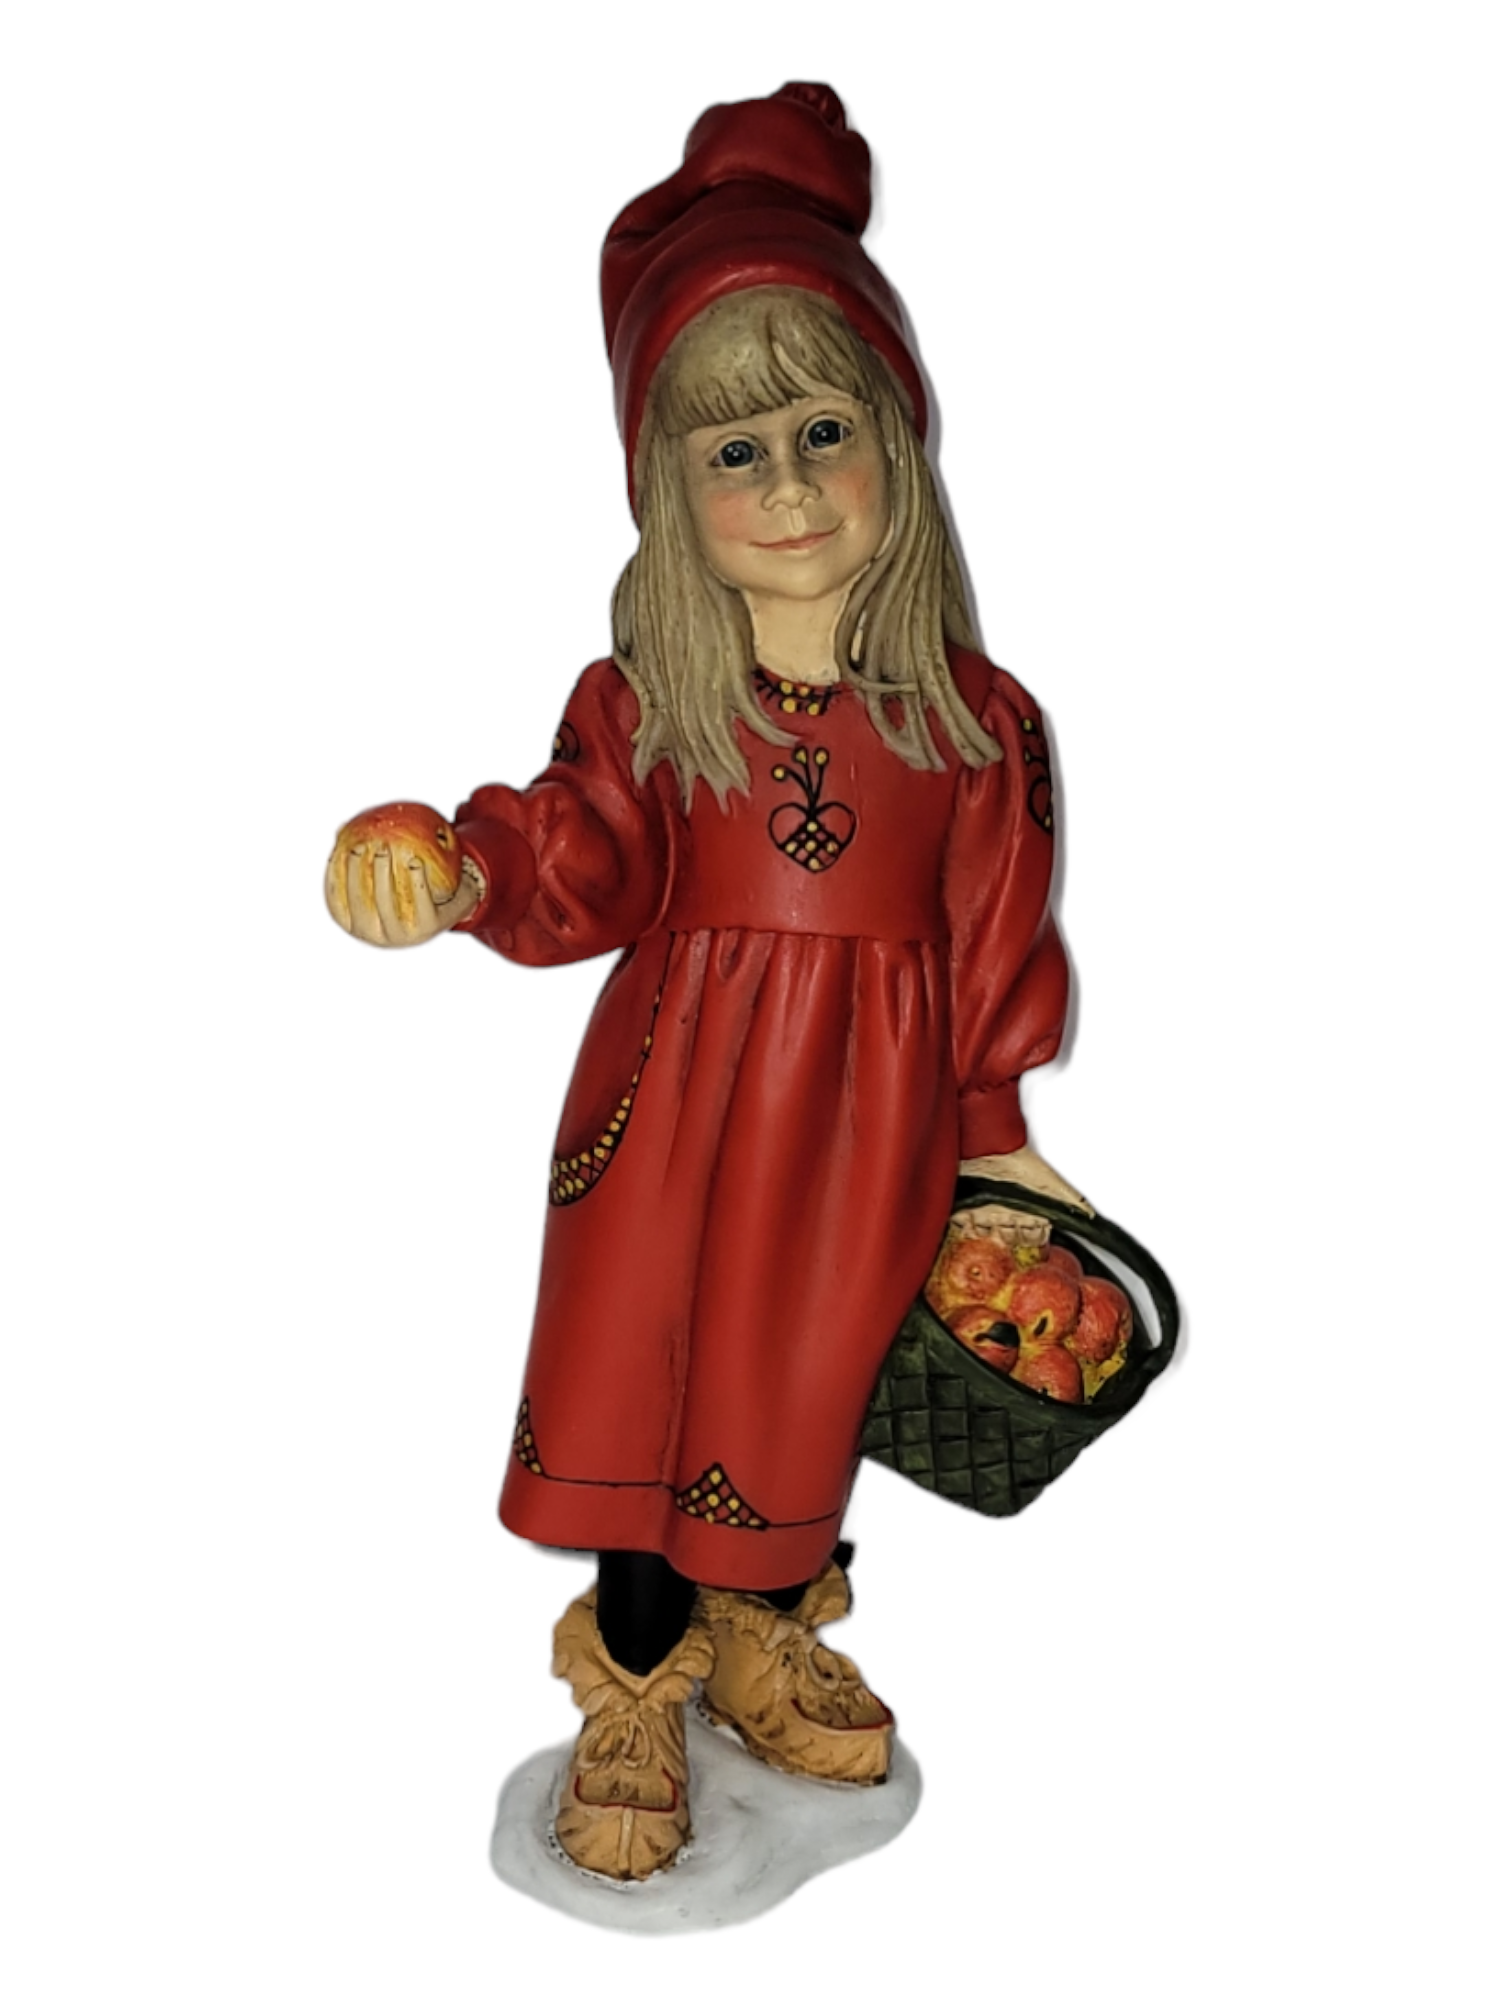 Figurine: Apple Girl Large